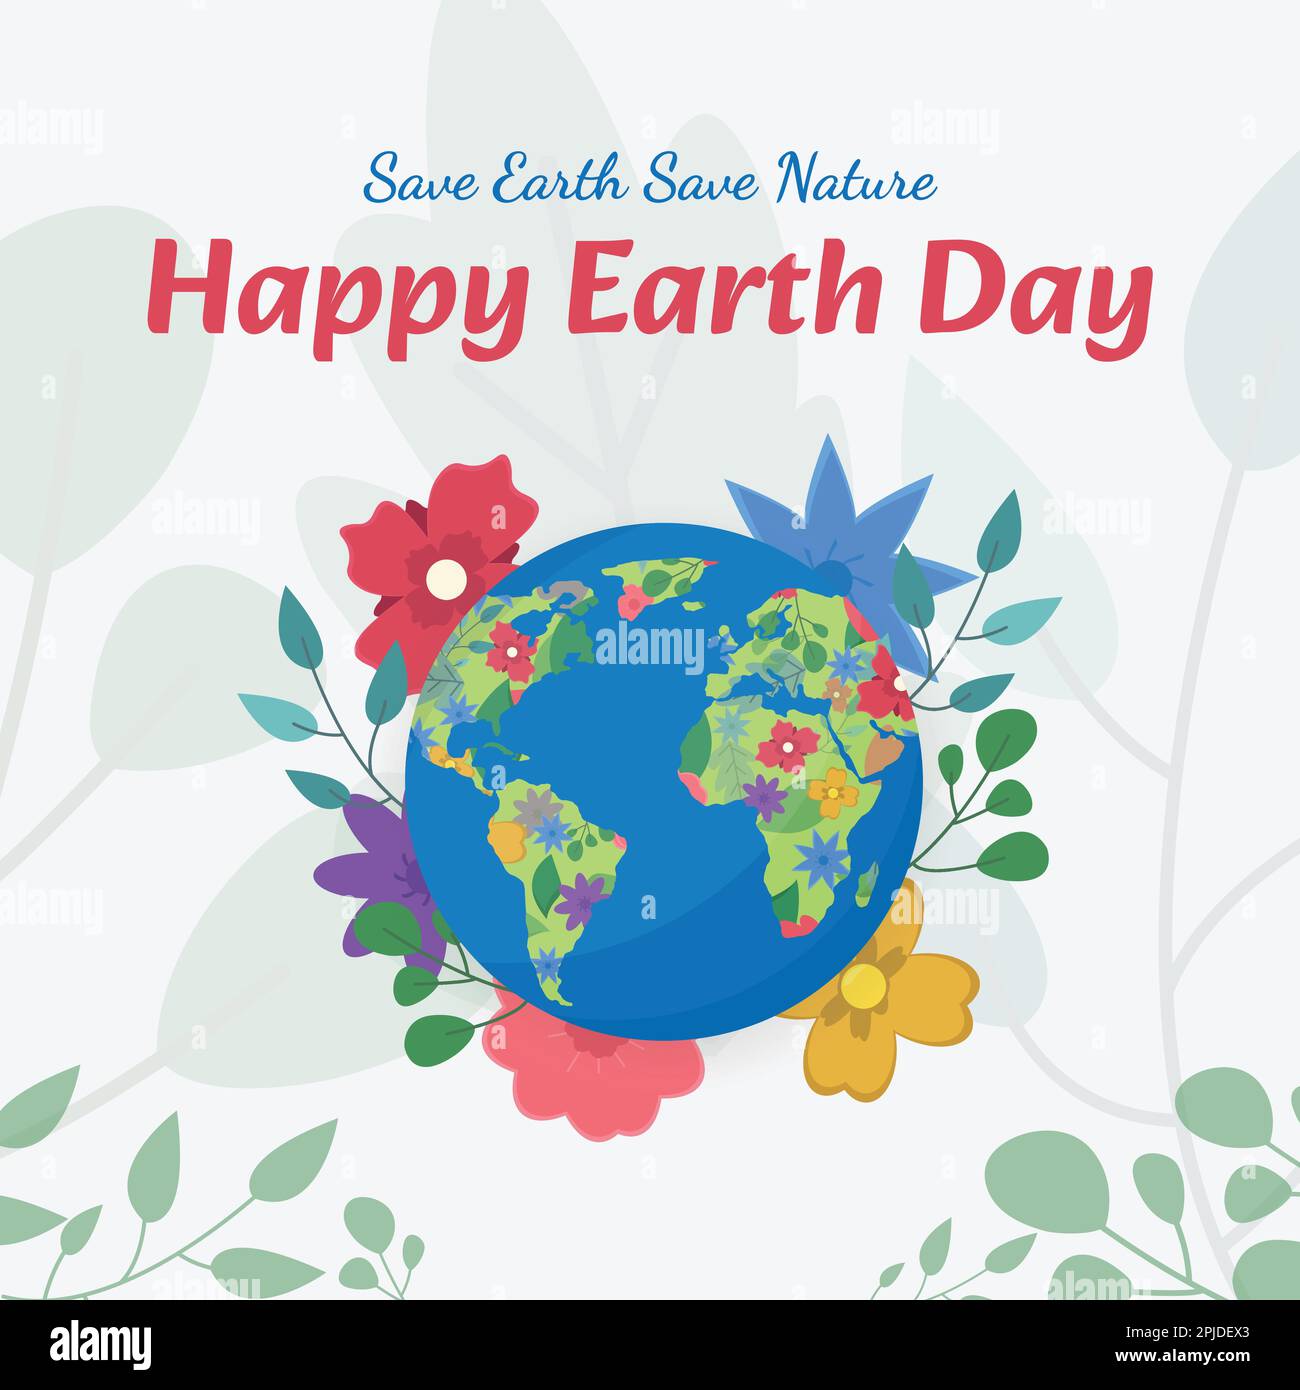 Happy Earth Day Celebration Design für Post, Poster, Karte und Banner. 22. April der Tag, um das Bewusstsein für den Klimawandel zu schärfen und die Welt zu retten. Stock Vektor